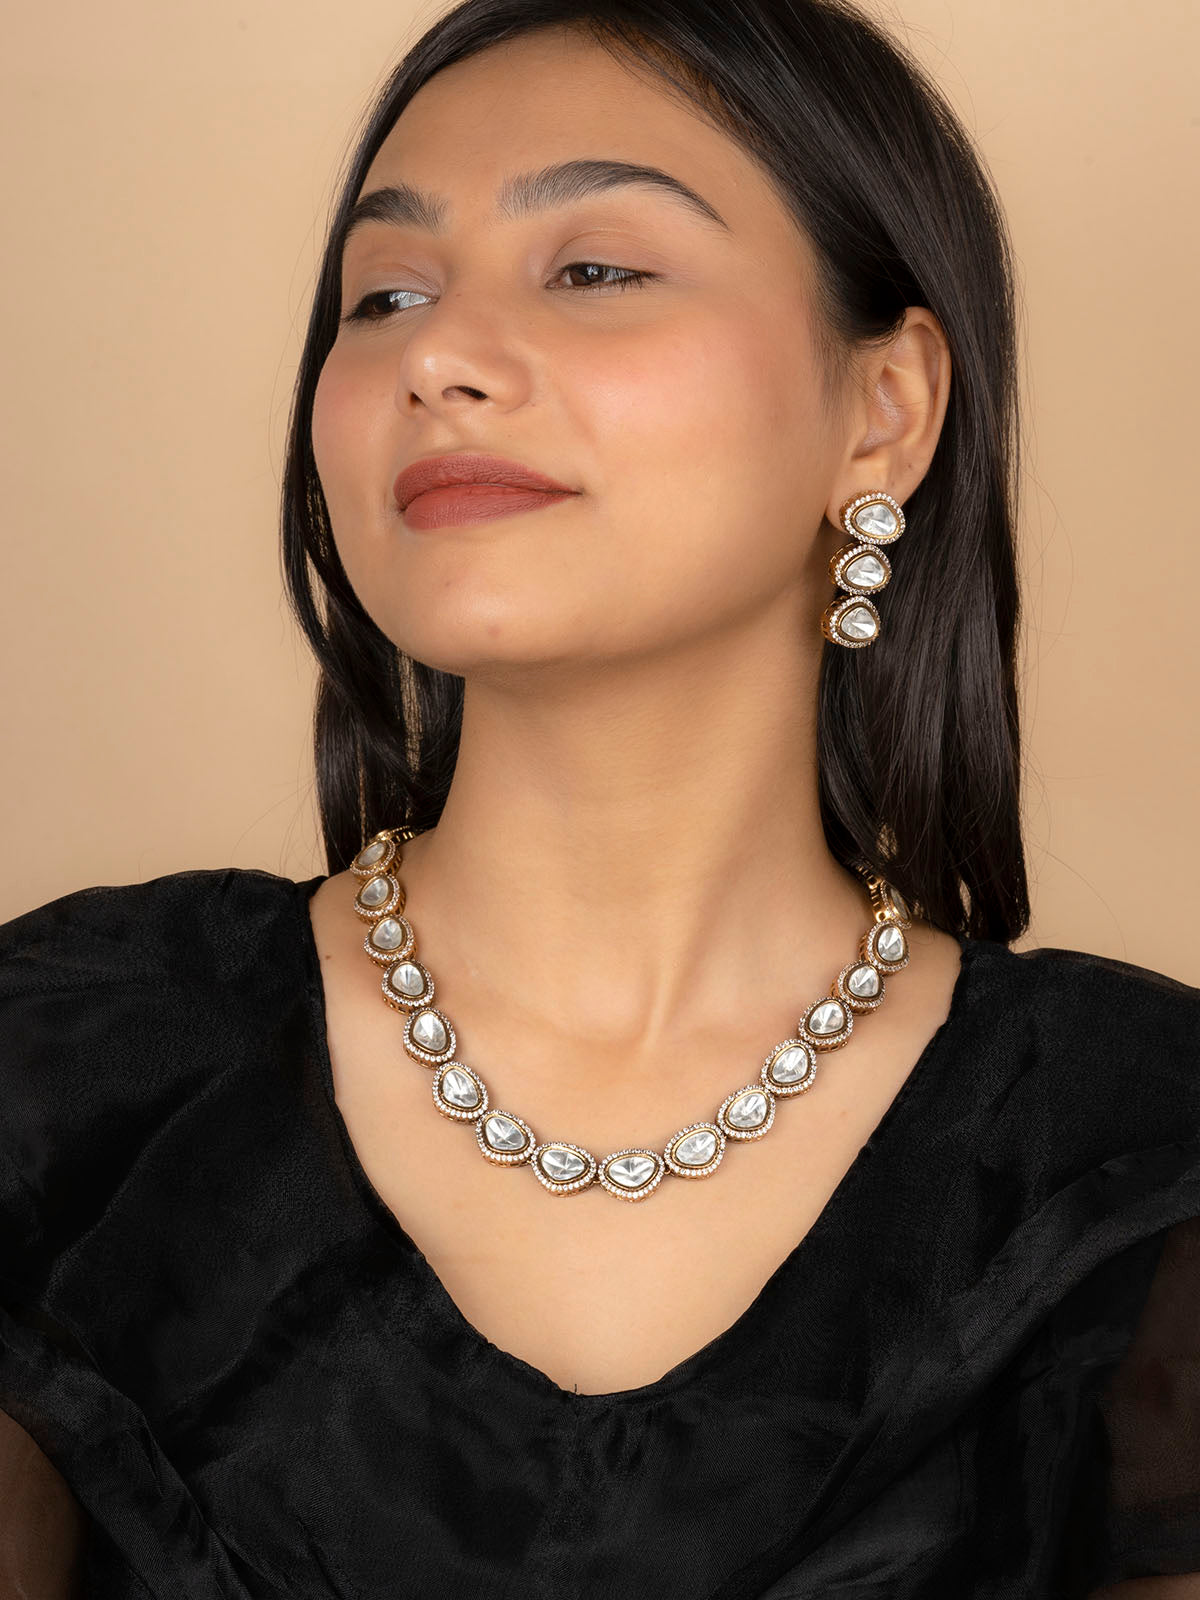 PK-S123 - White Color Faux Diamond Short Necklace Set